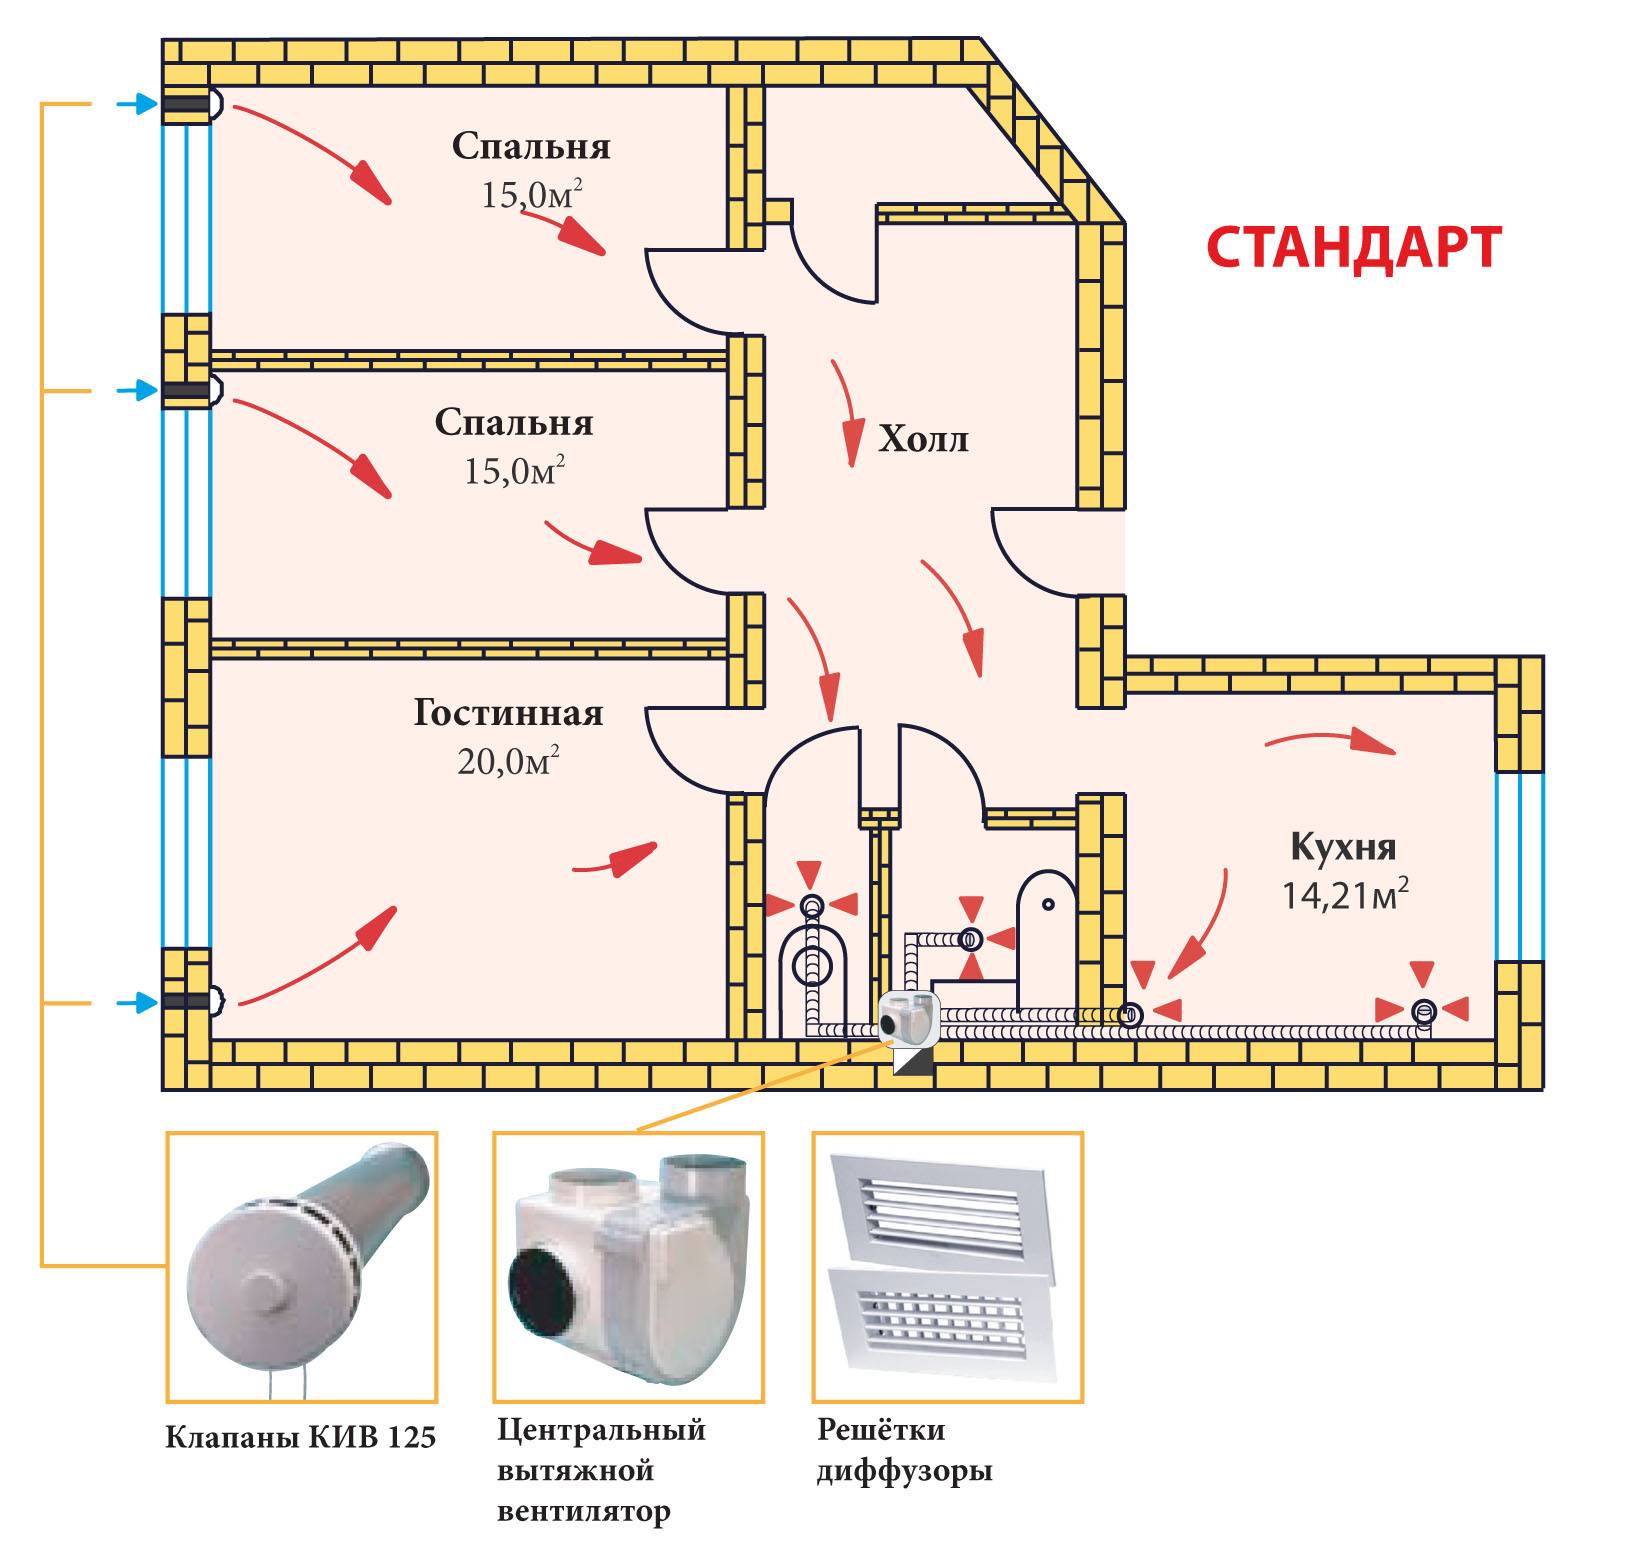 Улучшение вентиляции в квартире: проверка, чистка, дополнительный воздухообмен